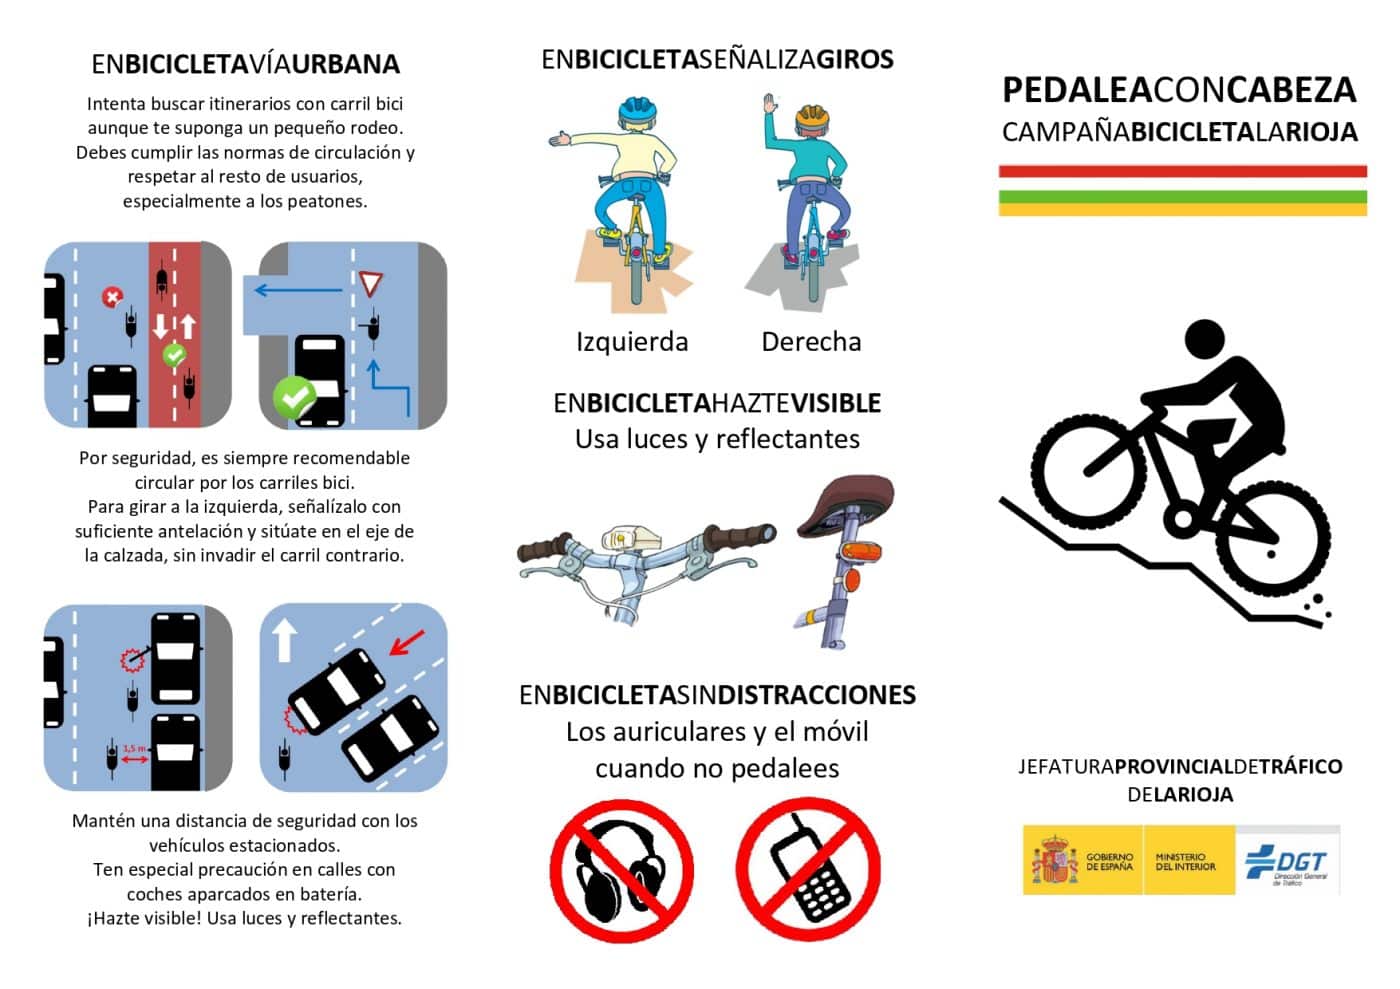 'Pedaleando con cabeza', la nueva campaña de concienciación y vigilancia dirigida a los ciclistas riojanos 1